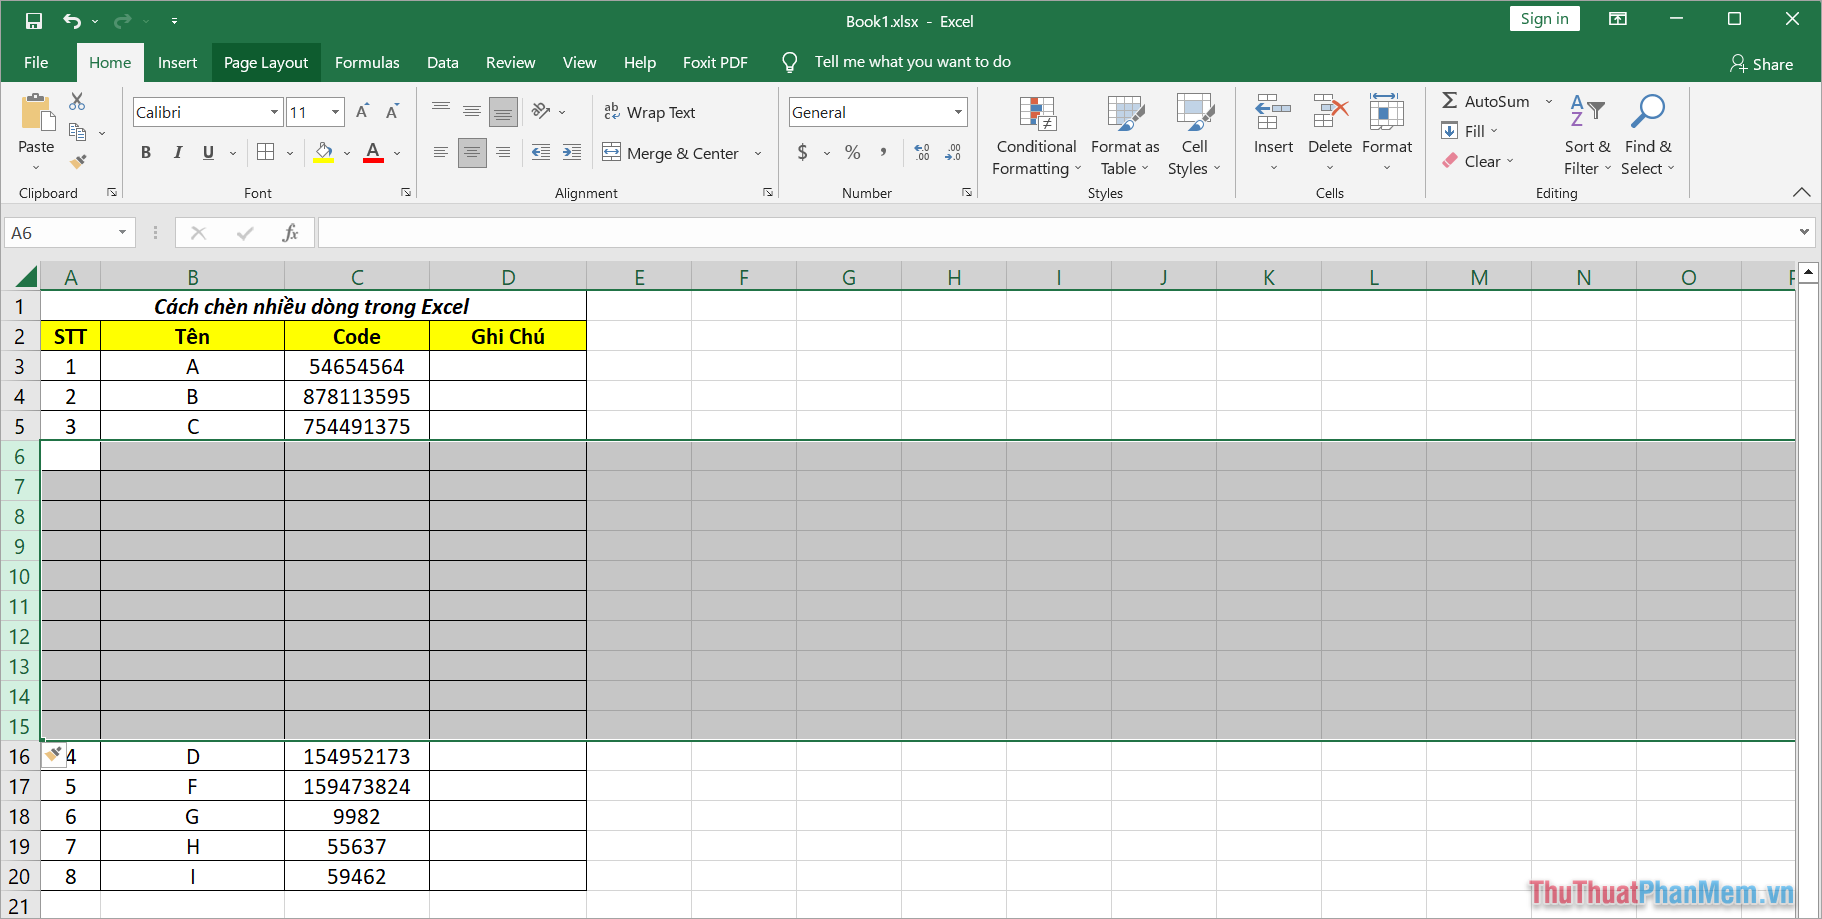 Hoàn tất việc Insert nhiều dòng trống trong Excel